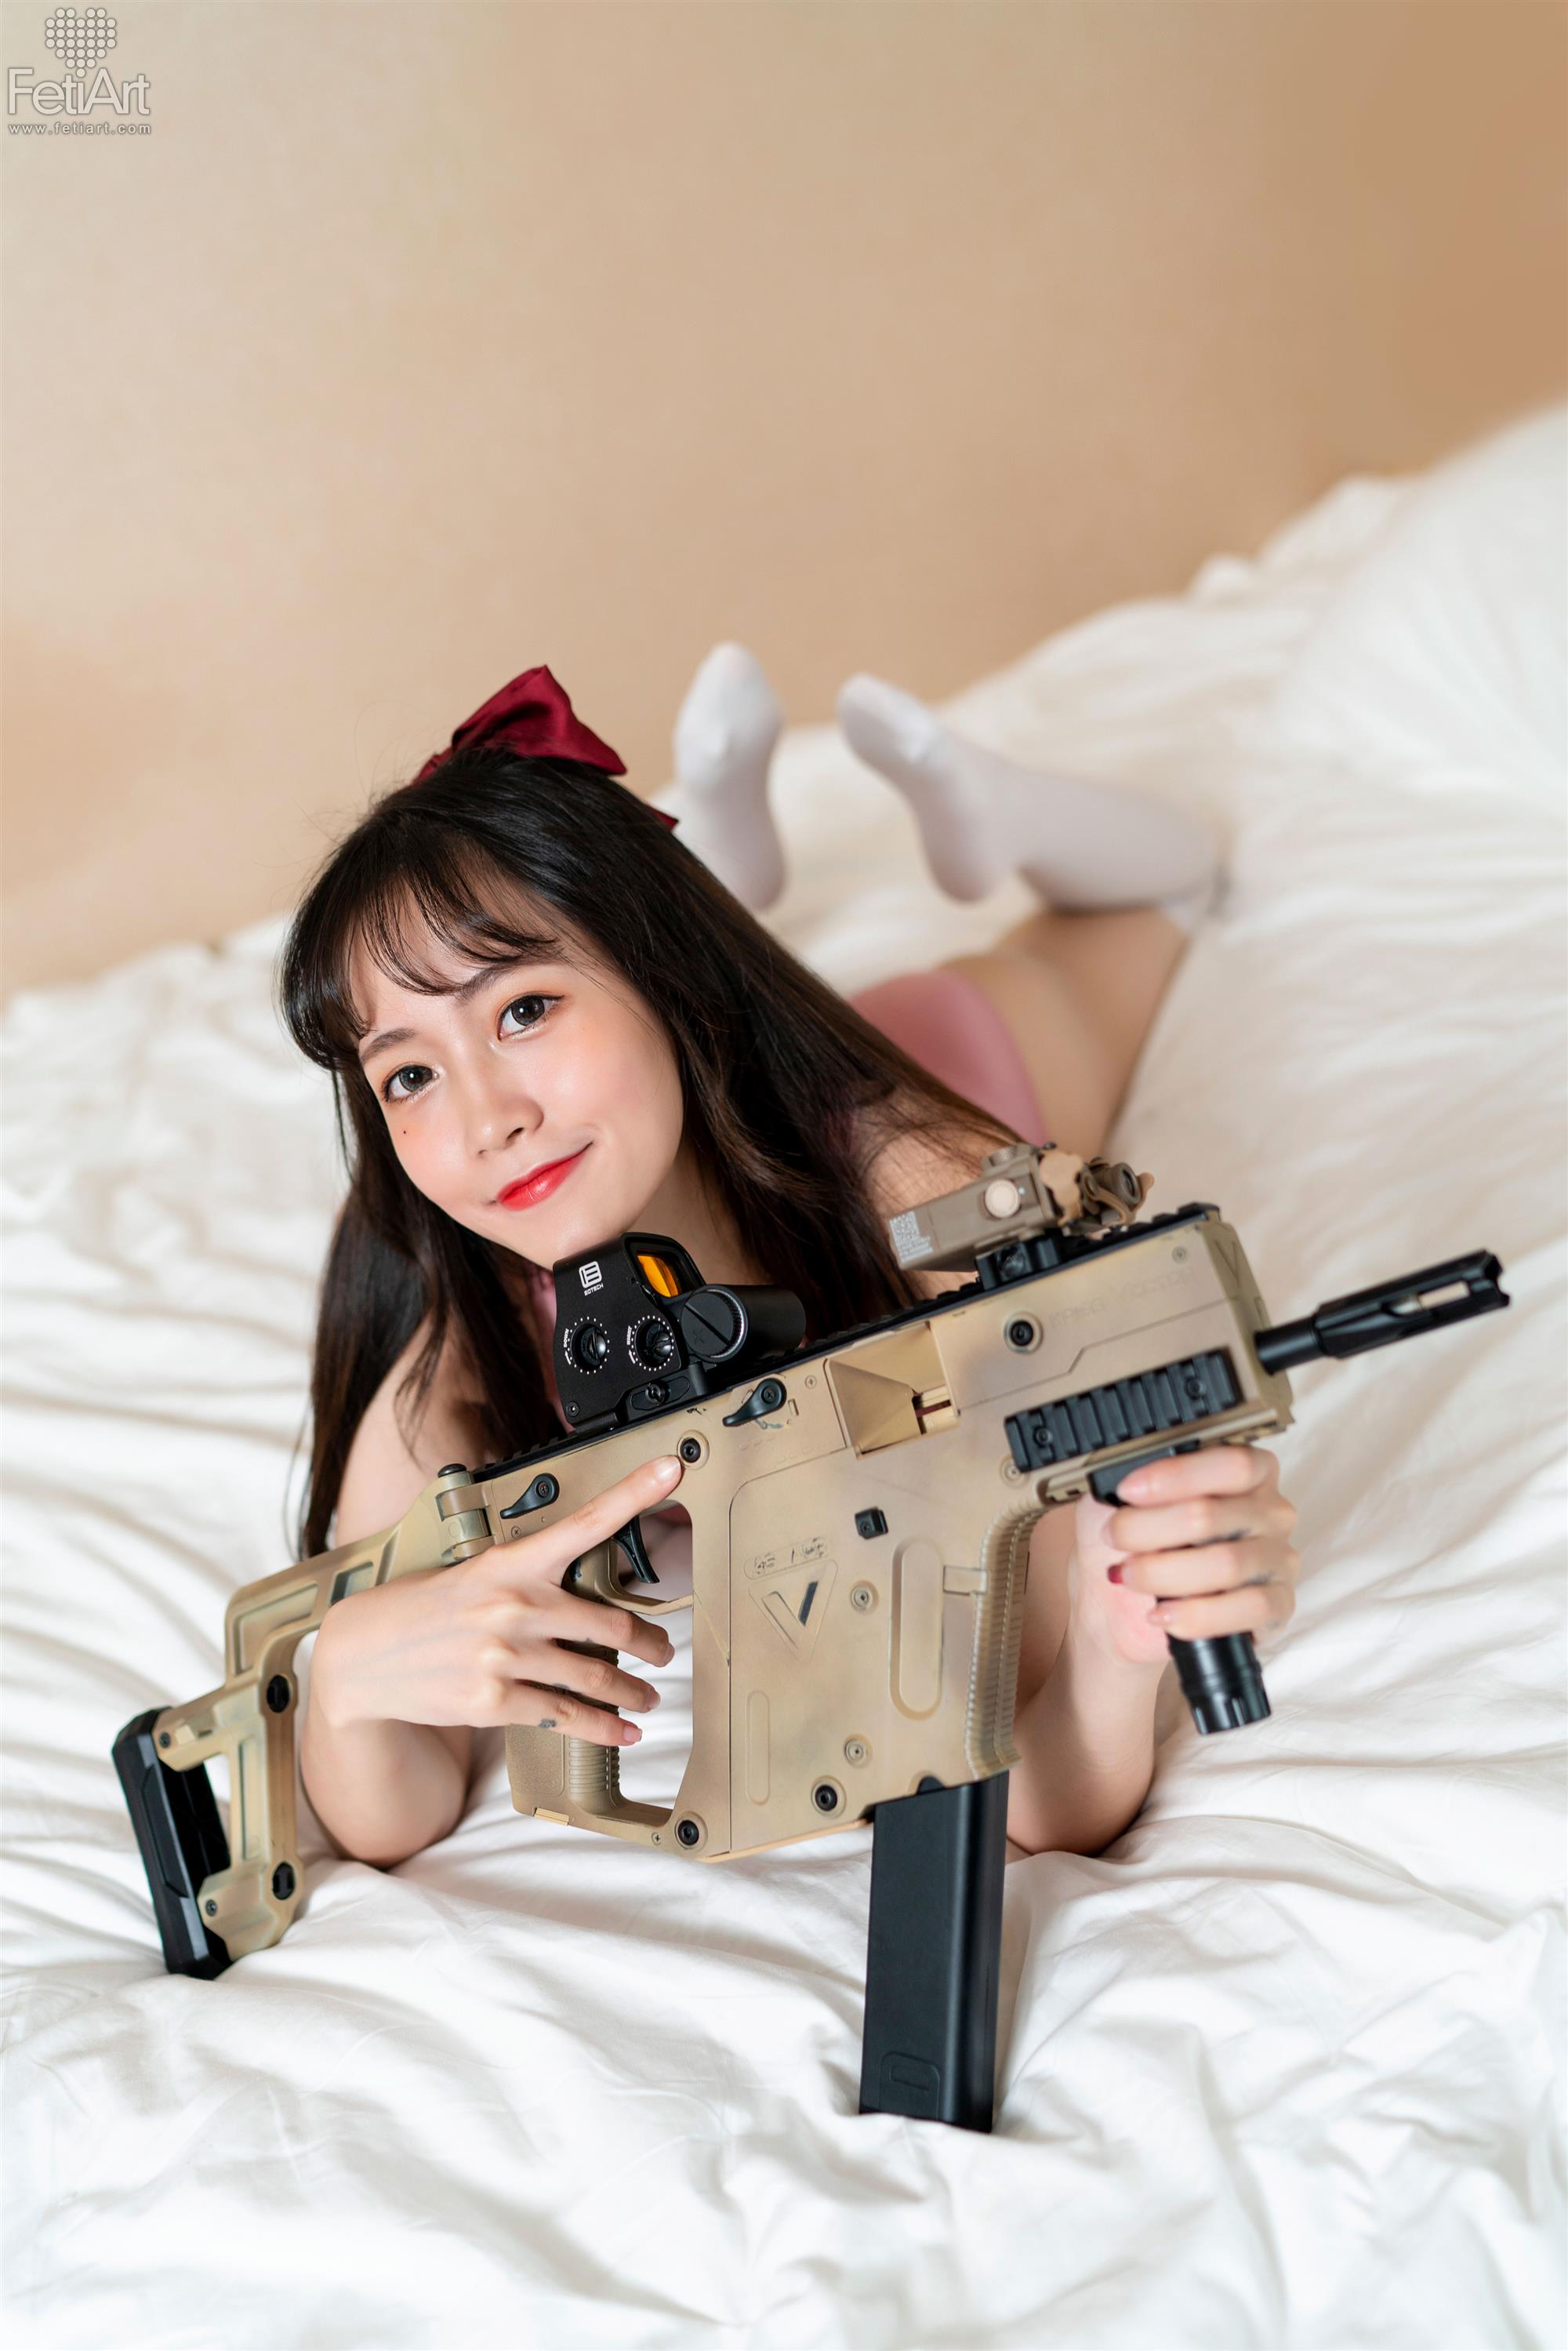 FetiArt 尚物集 No.019 Gunslinger Girl MODEL Mmi - 20.jpg